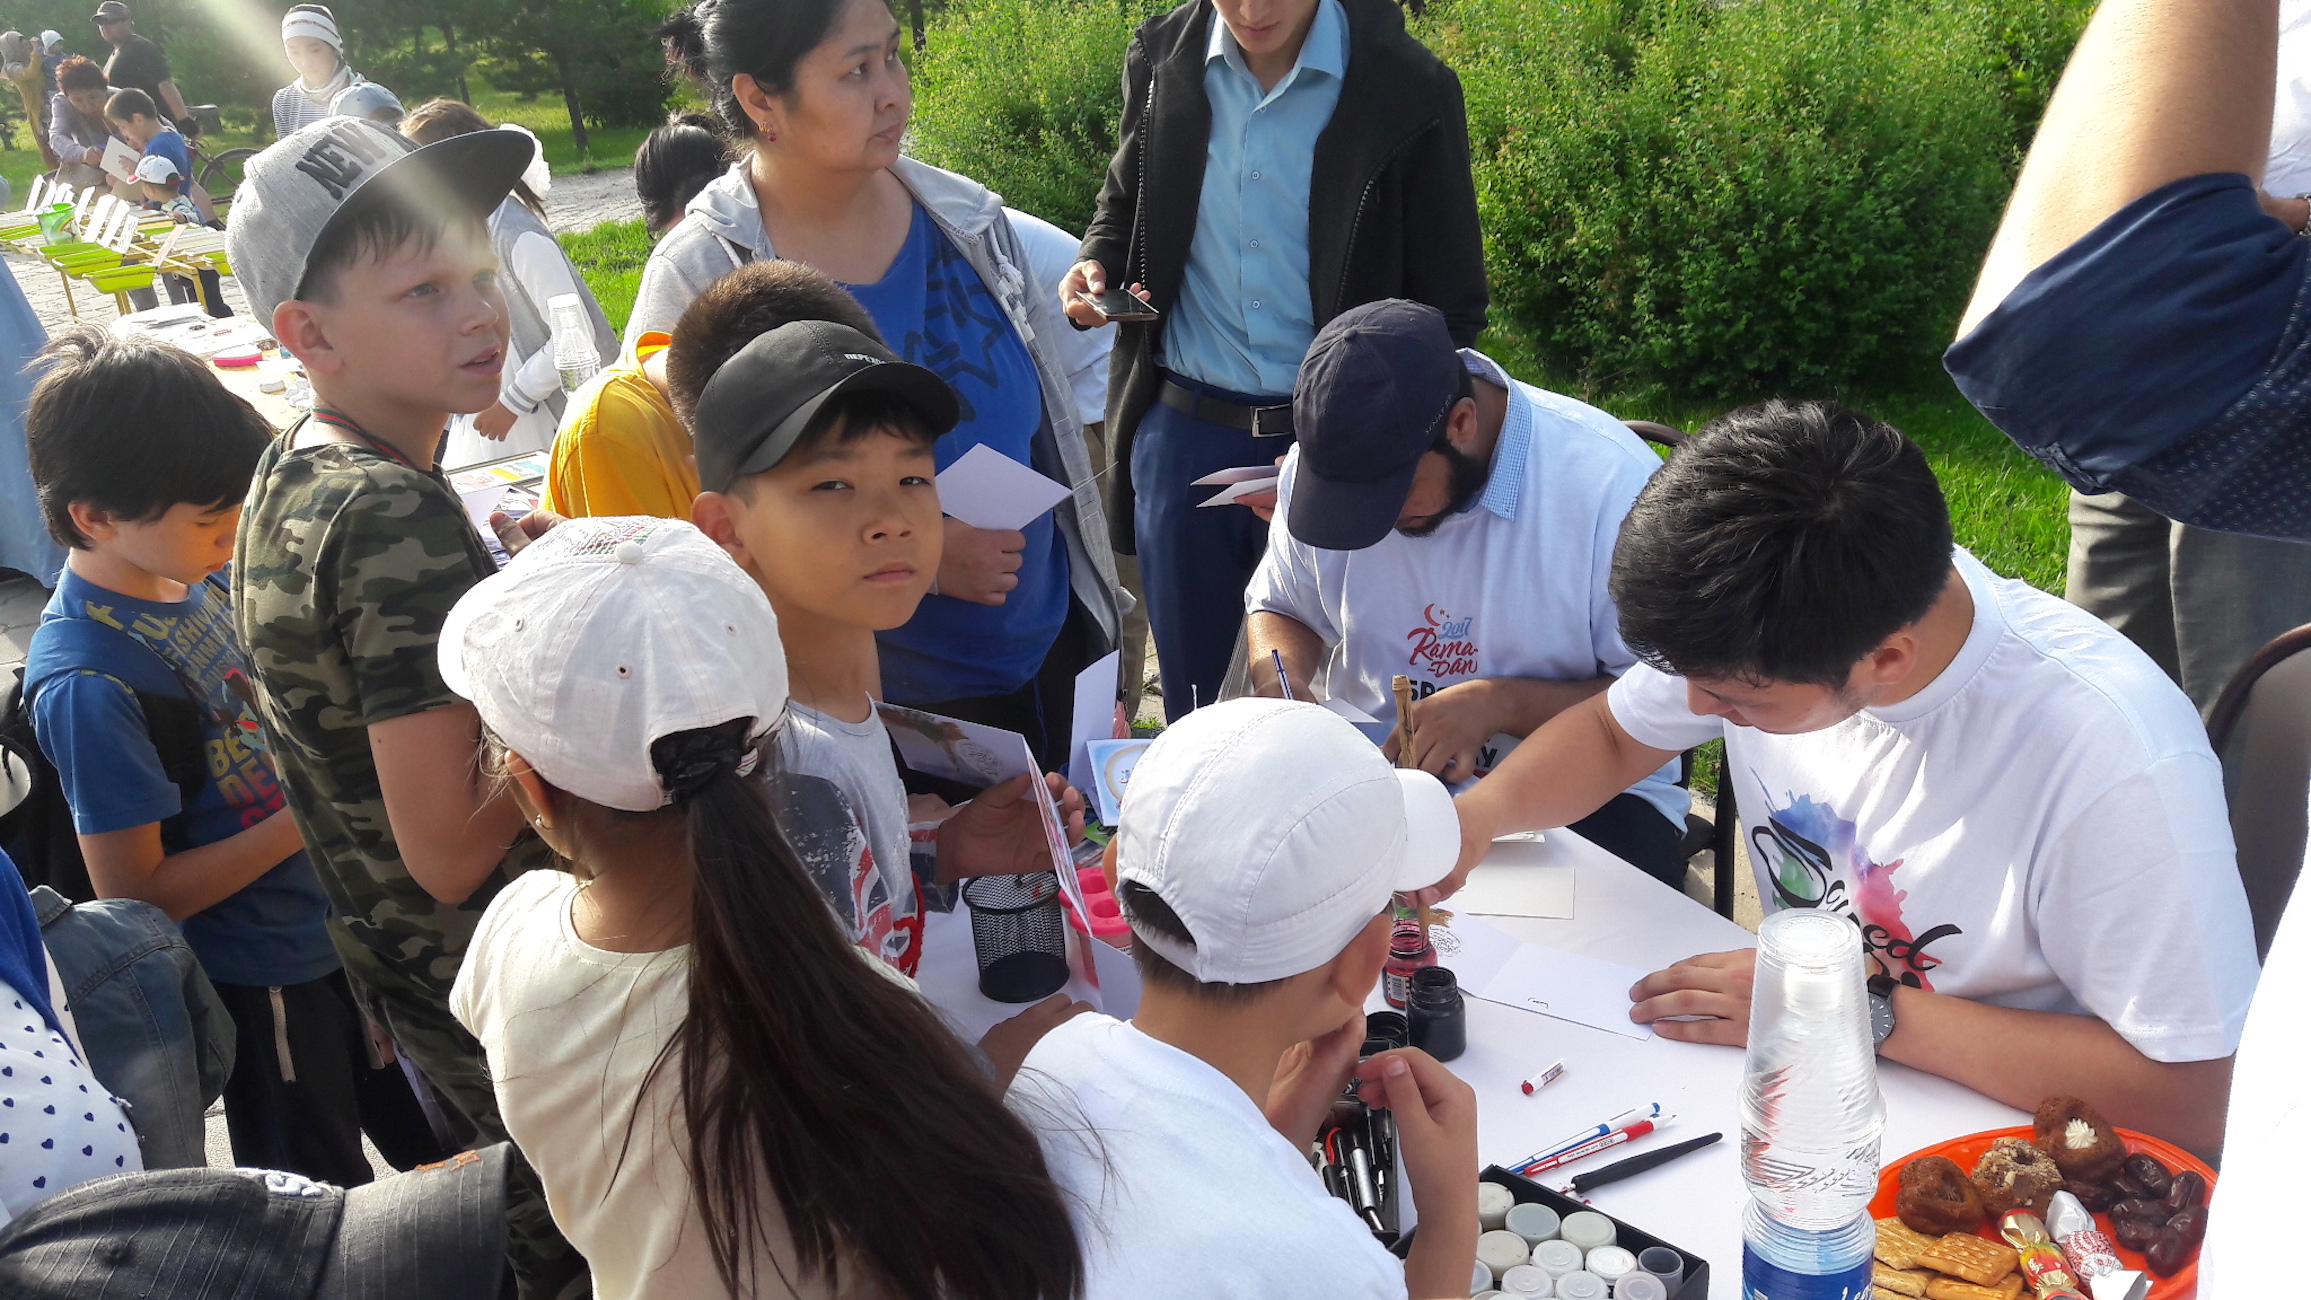 Дети участвуют в фестивале «Рамазан – праздник для души» в Бишкеке 26 мая. Мероприятия включали конкурсы викторины и бесплатные мастер-классы по изготовлению открыток и обучению арабской письменности. [Аскер Султанов] 